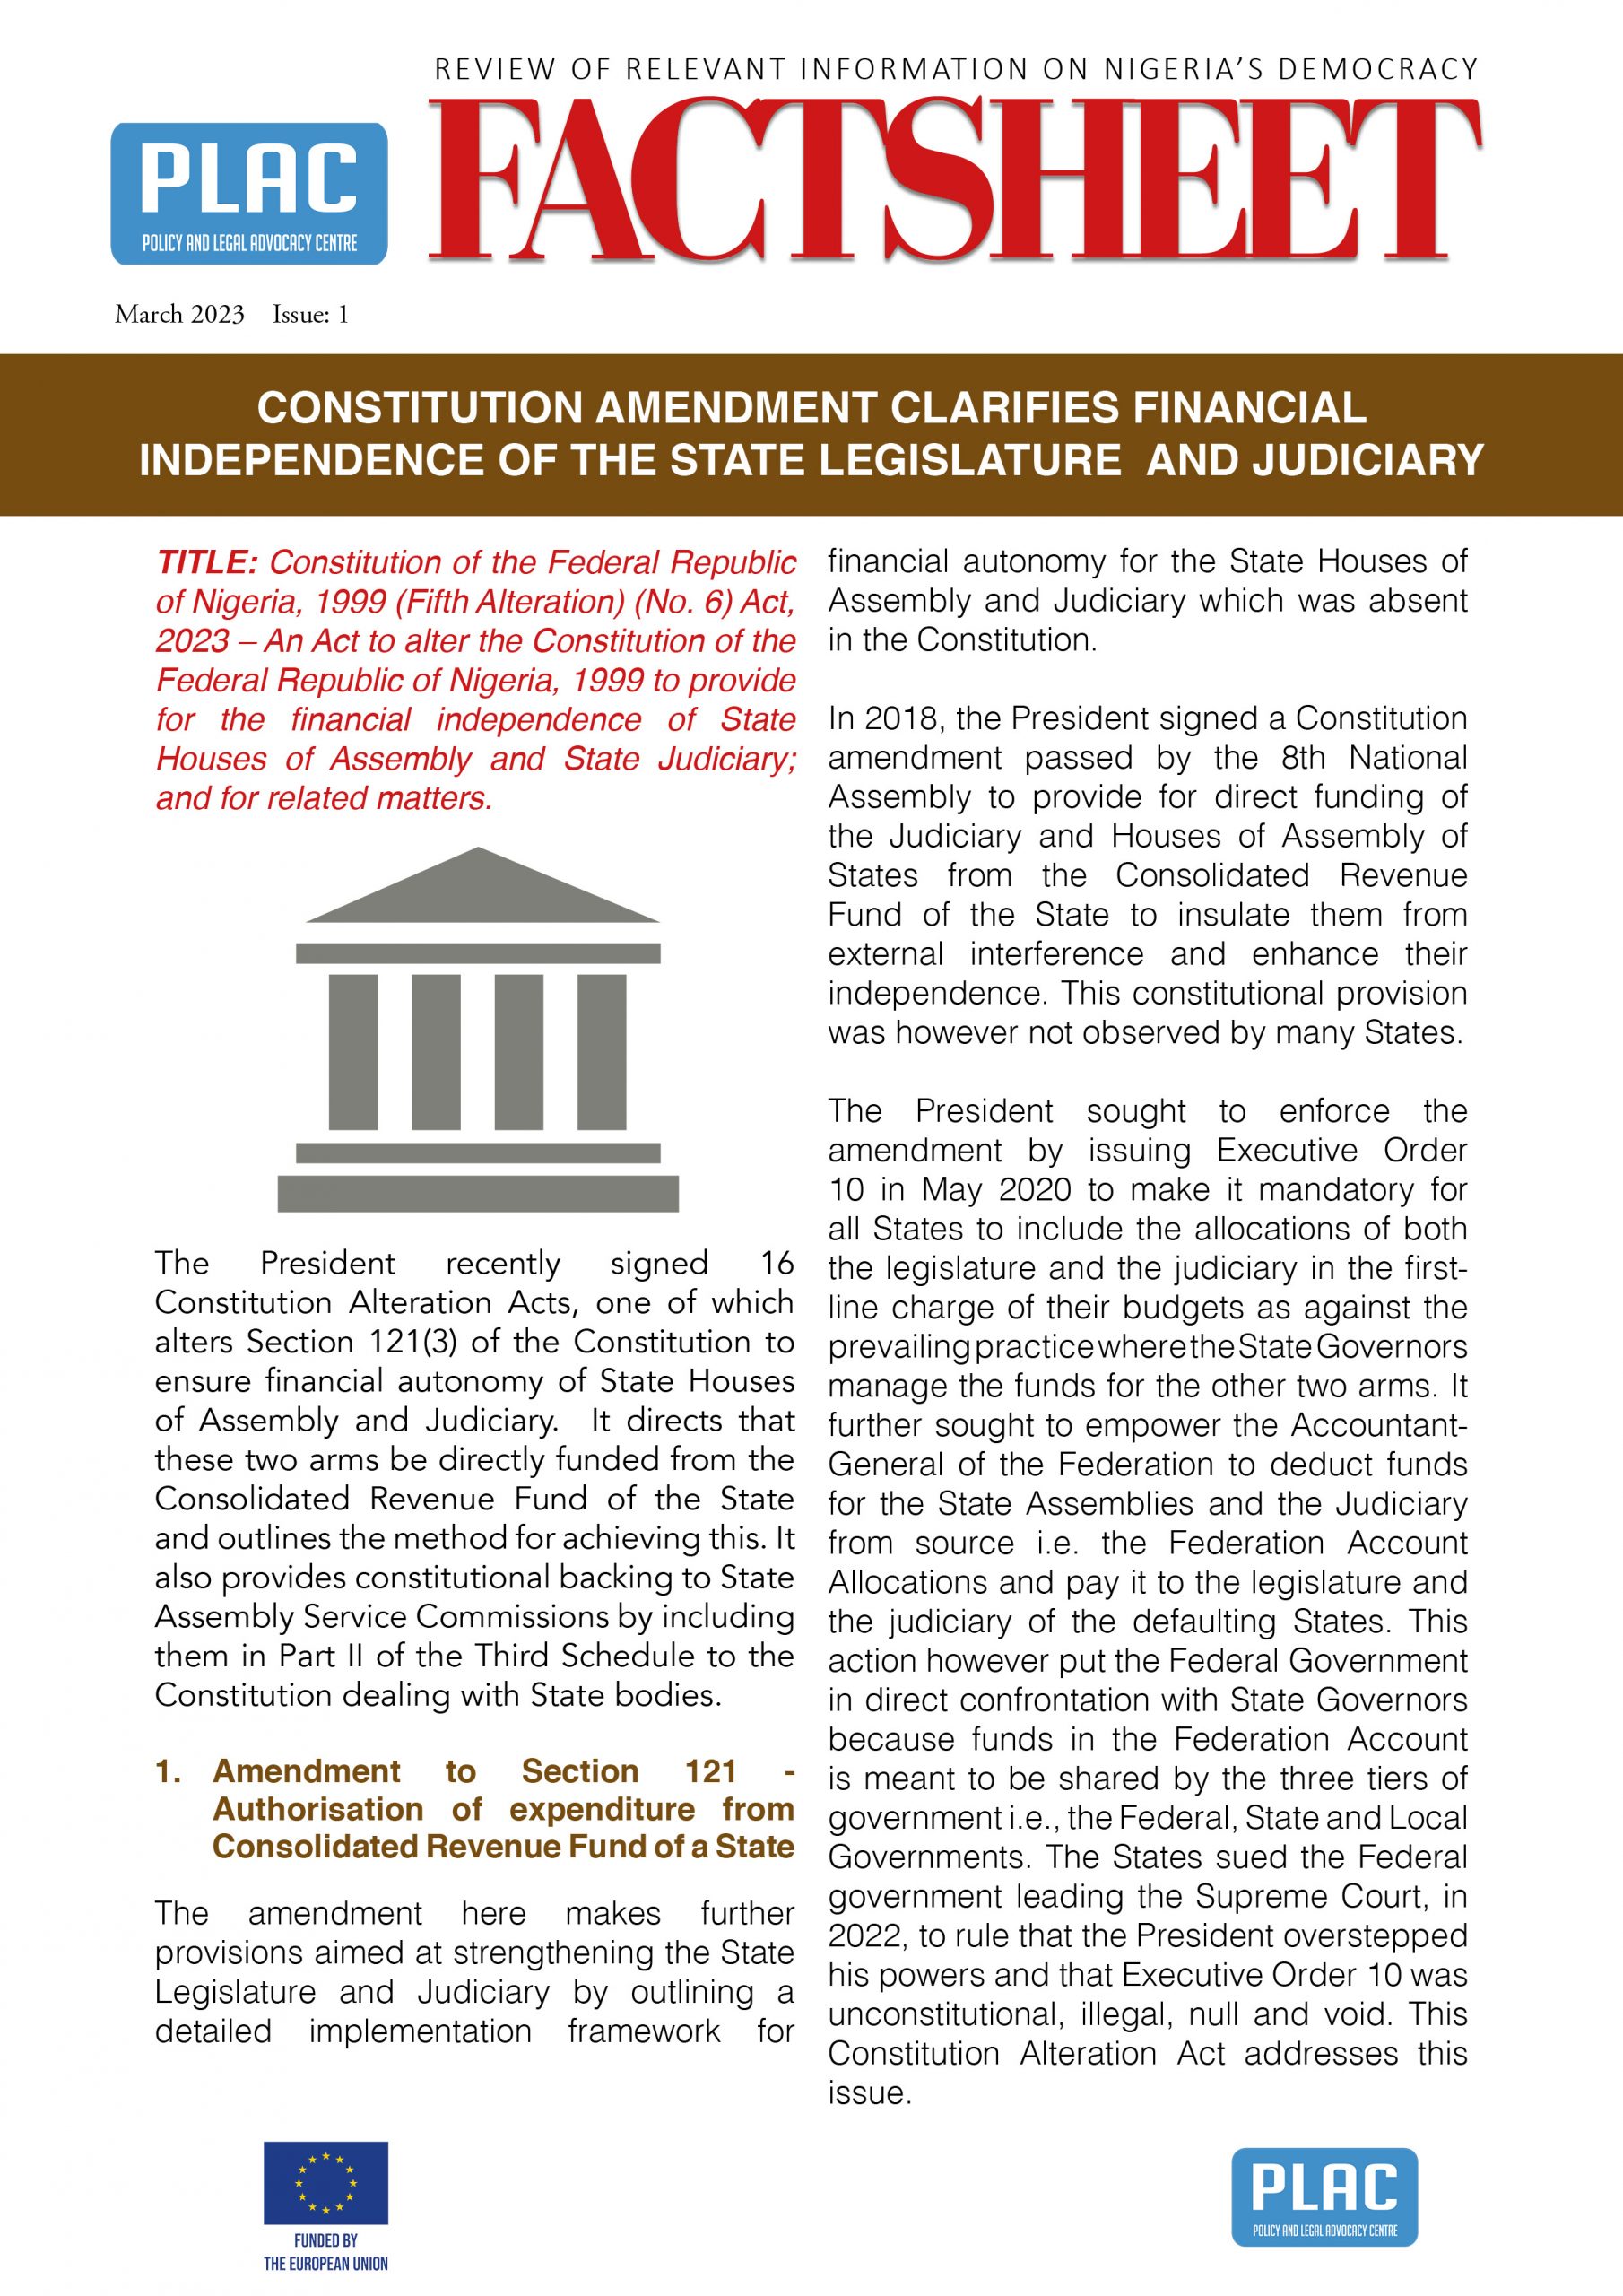 Factsheet on Independence of Judiciary & Legislature